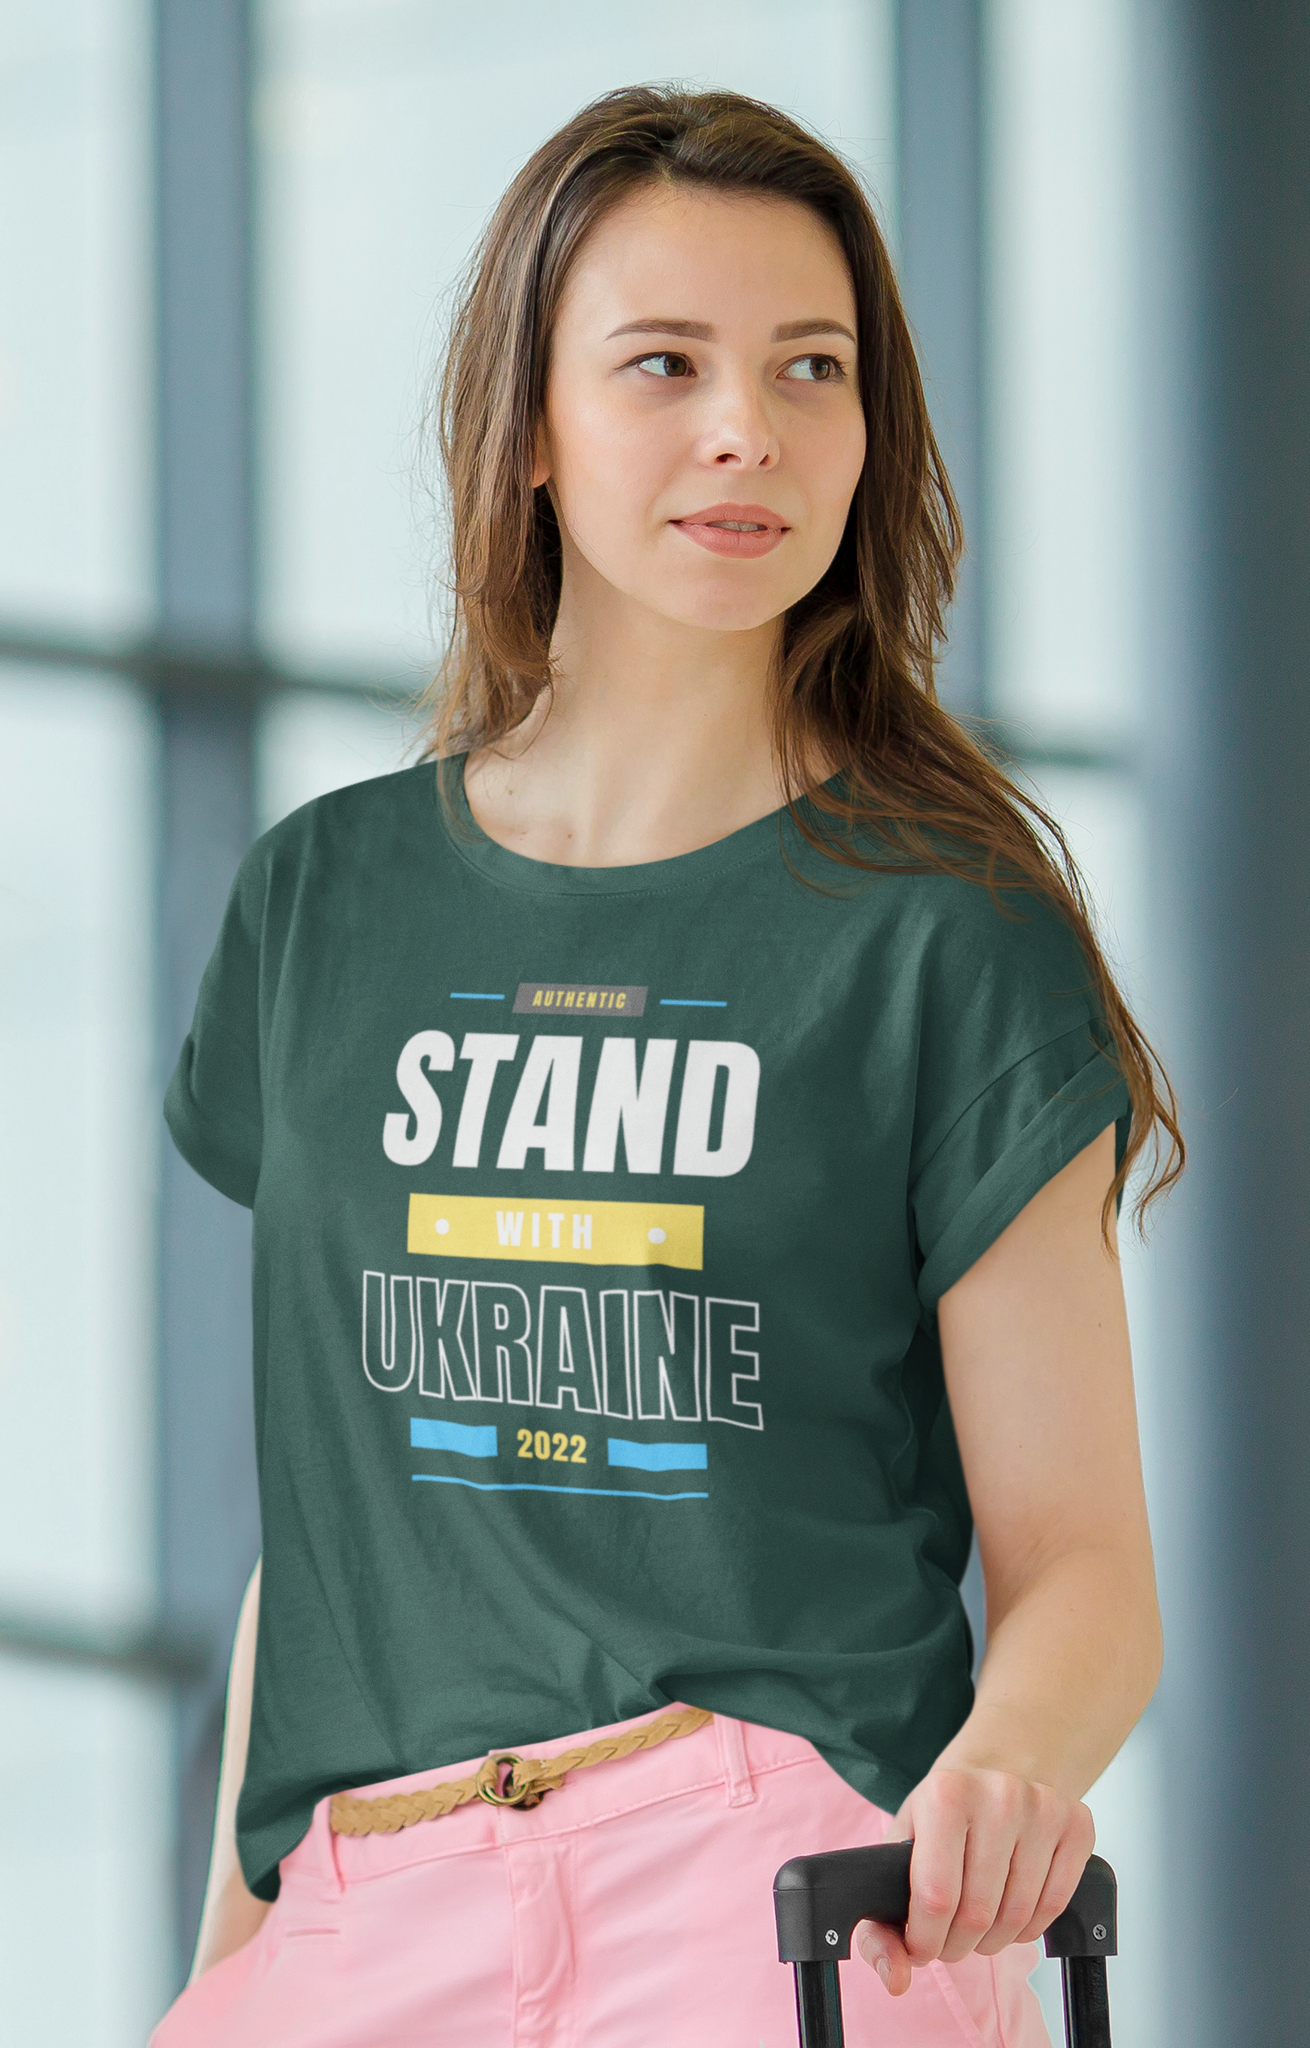 Jag står bakom Ukraina i detta krig. Stoppa kriget. Tshirt med text Stand with Ukraine